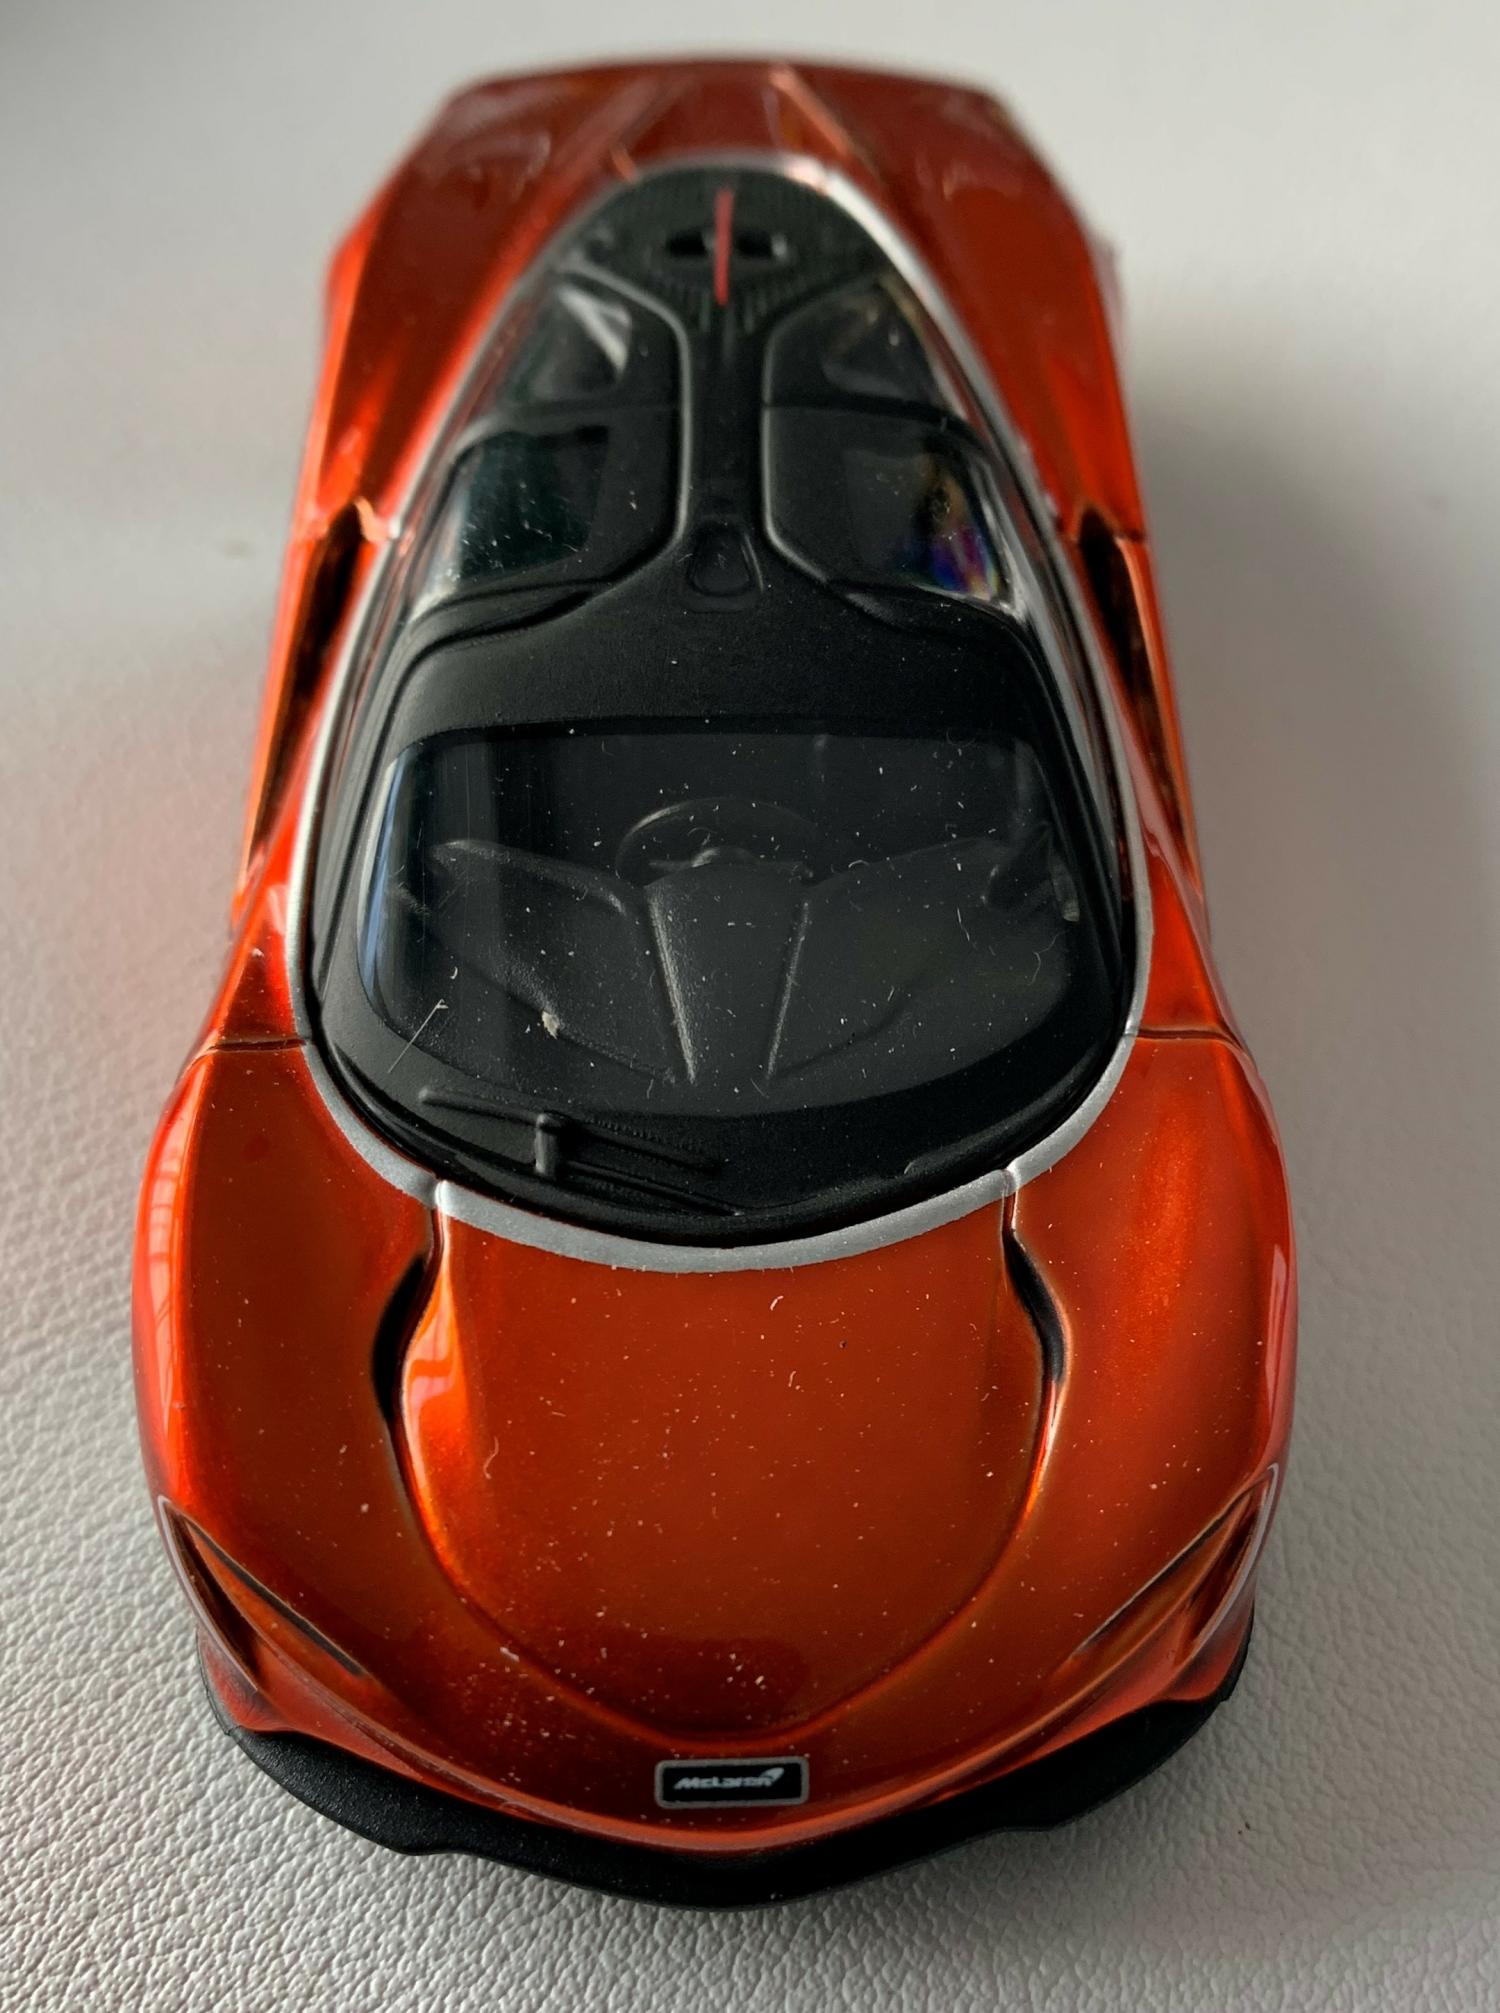 McLaren Speedtail in metallic orange 1:47 scale model